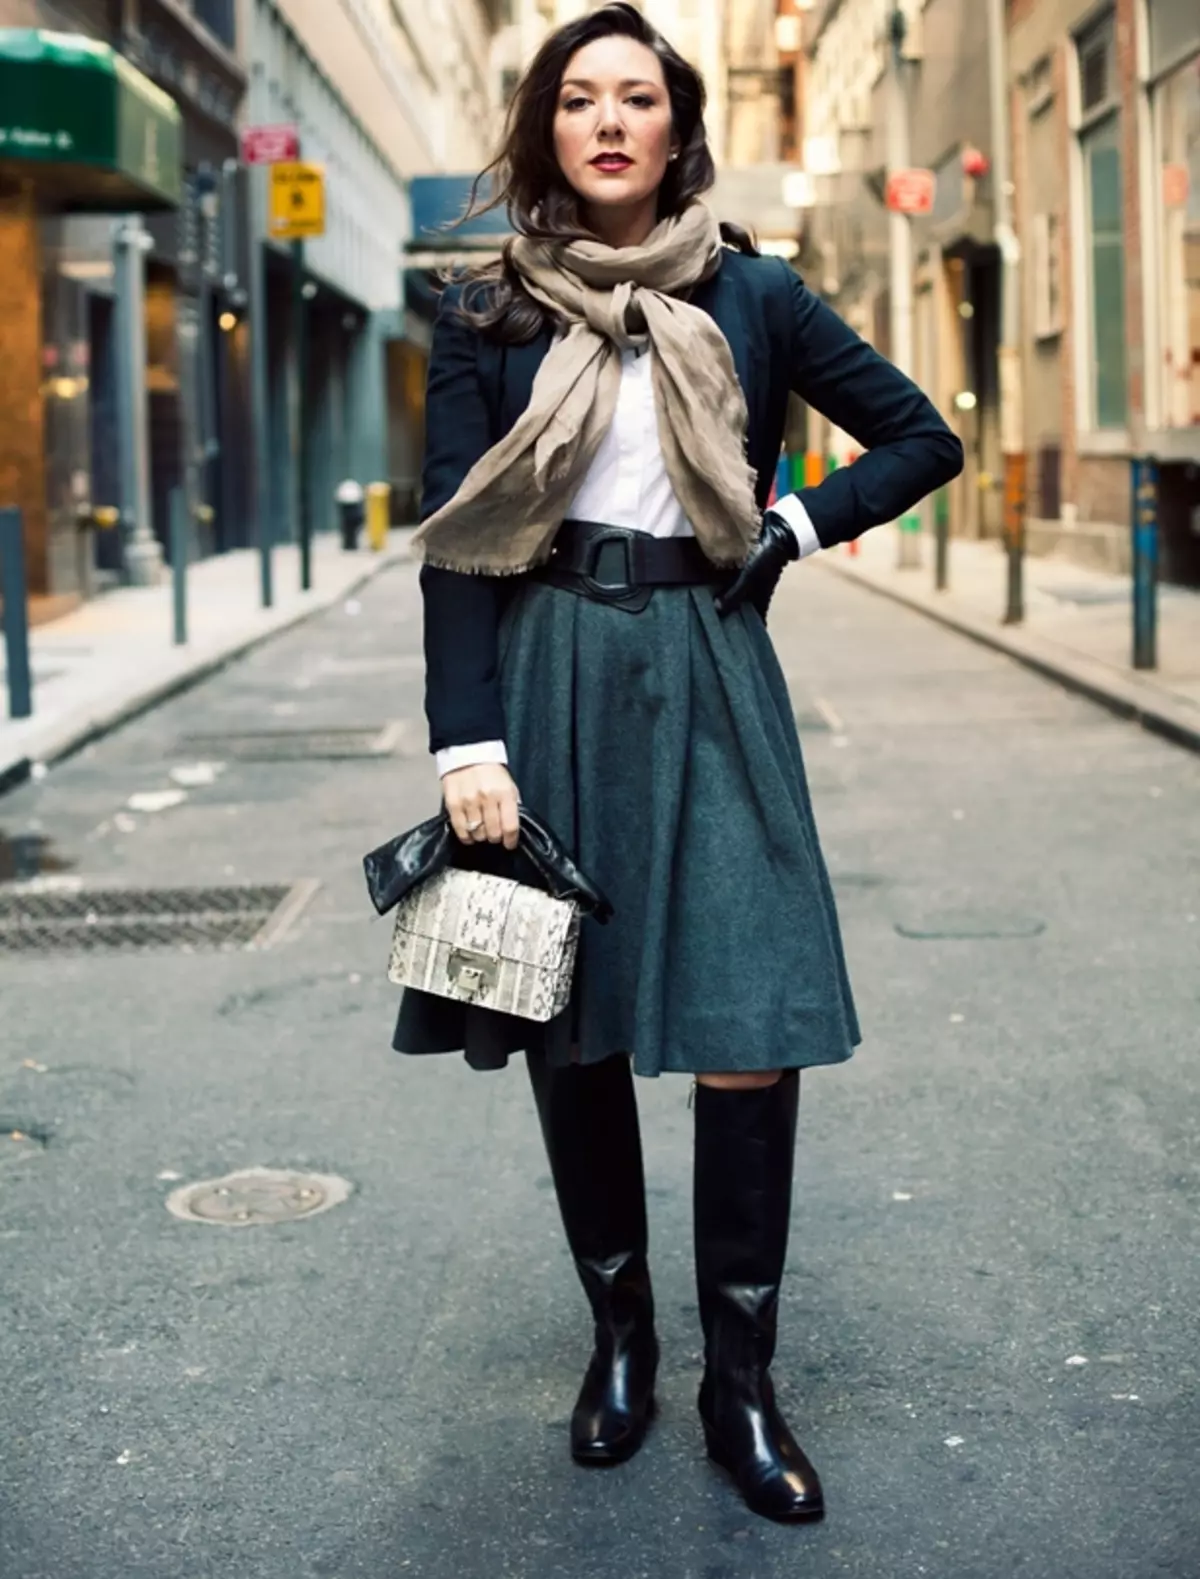 Мода Парижа Франции стиль Парижский Шик